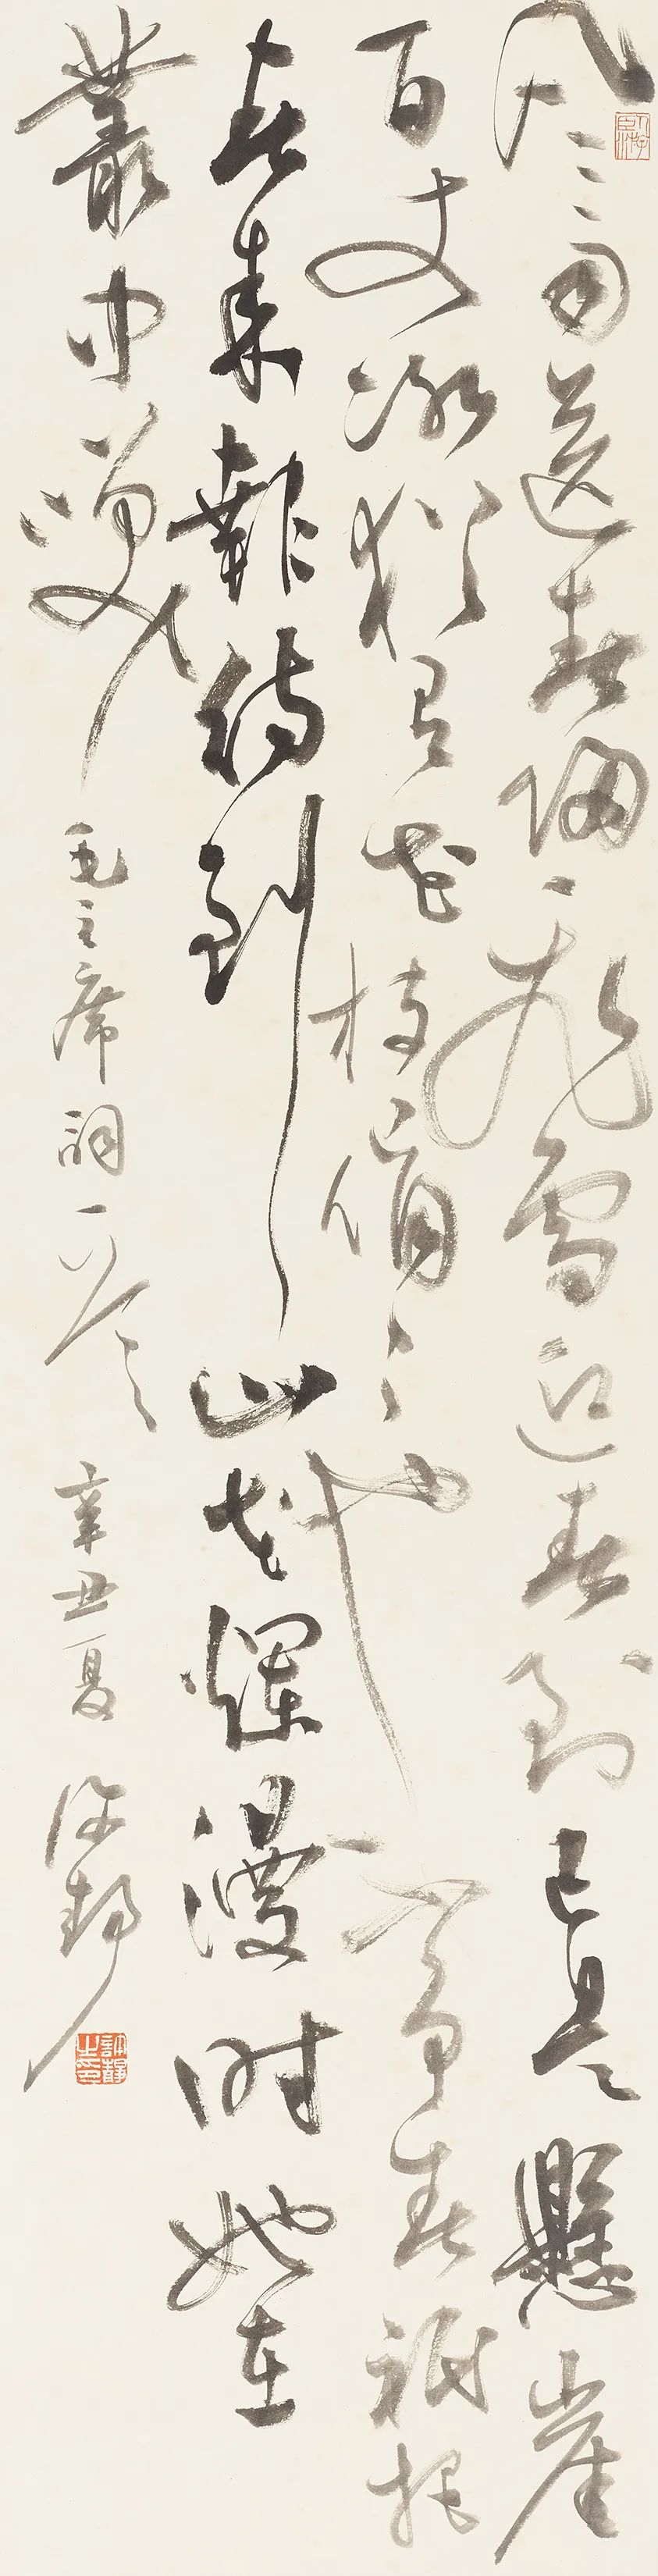 今日一渍间许静书法作品展(北京五十五号院子艺术空间) 2018 笔墨纸